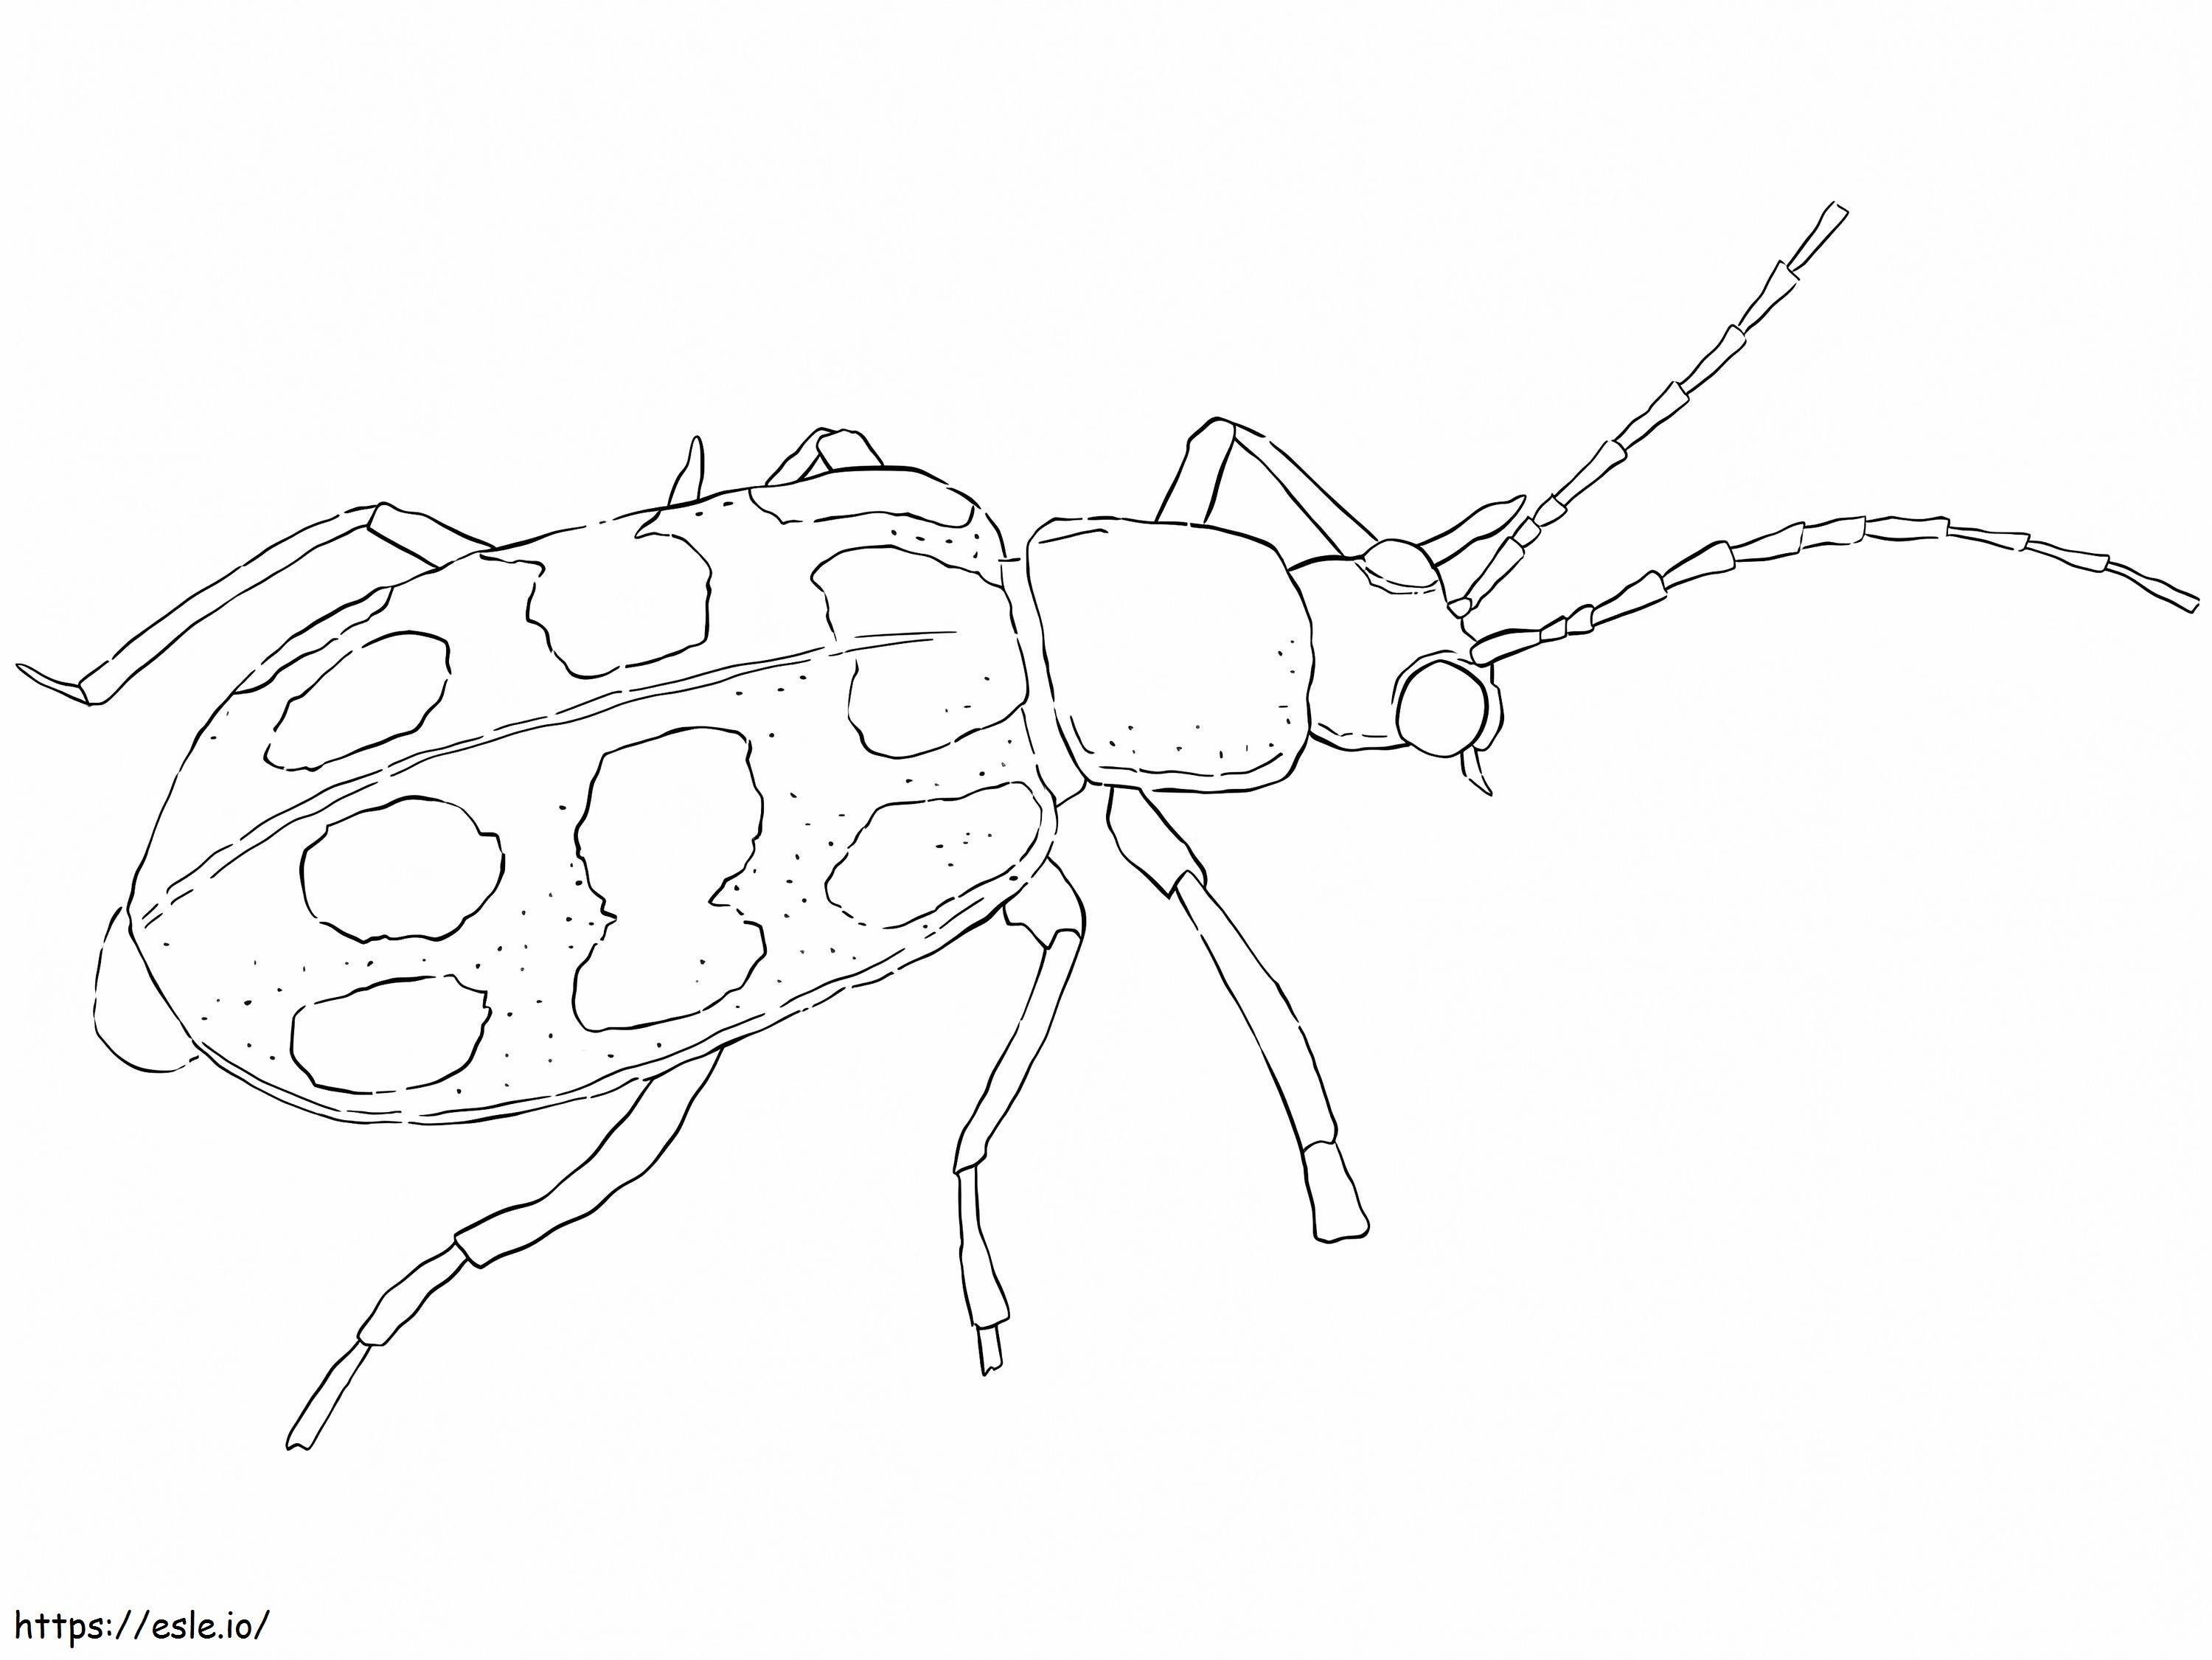 Kumbang Mentimun Berbintik Gambar Mewarnai